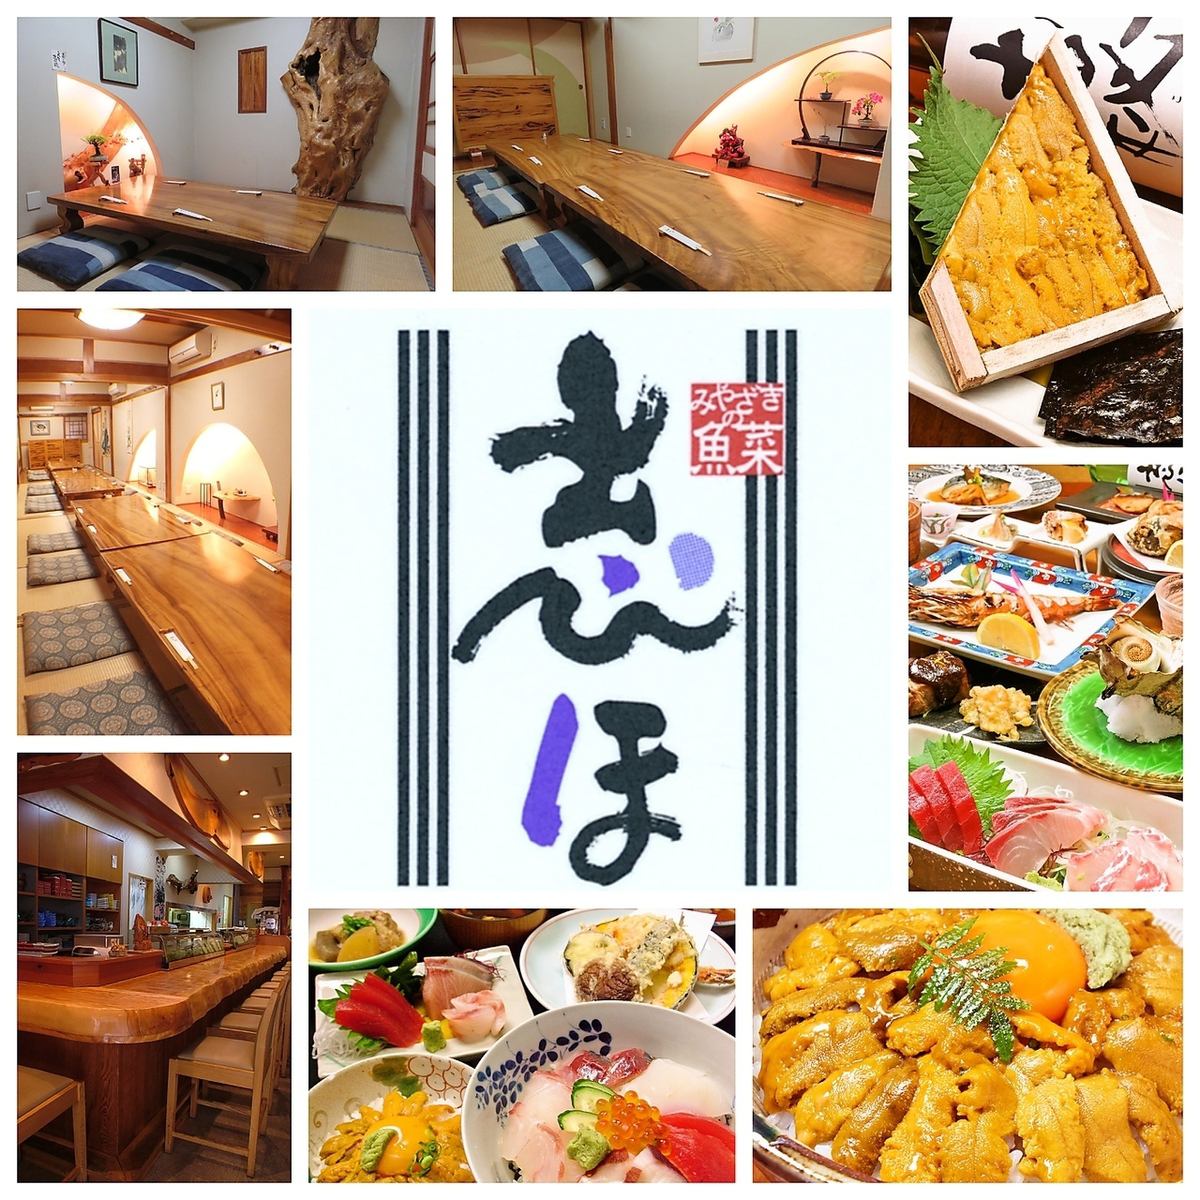 在經營了 44 年的老字號店，可以品嚐到正宗的日本料理……享受宮崎縣捕獲的新鮮海產品